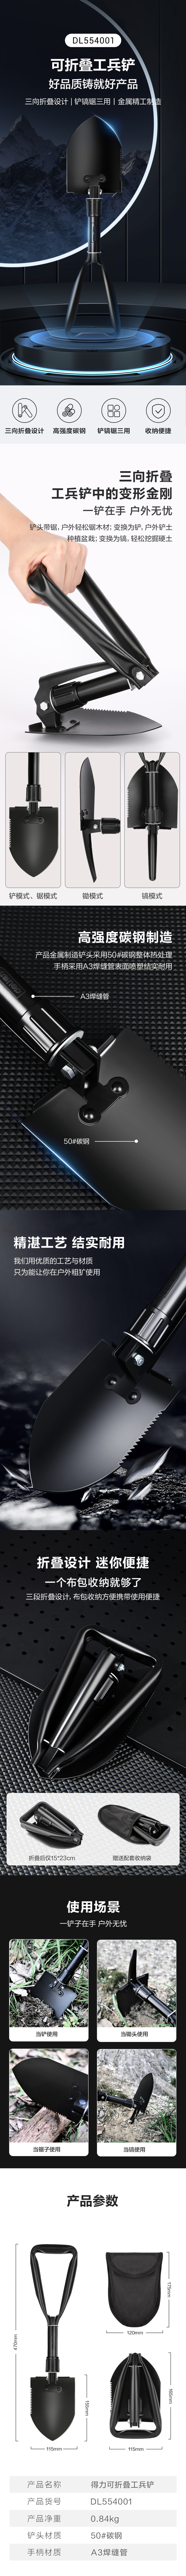 得力工具 DL554001 折叠式工兵铲(黑)-155mm